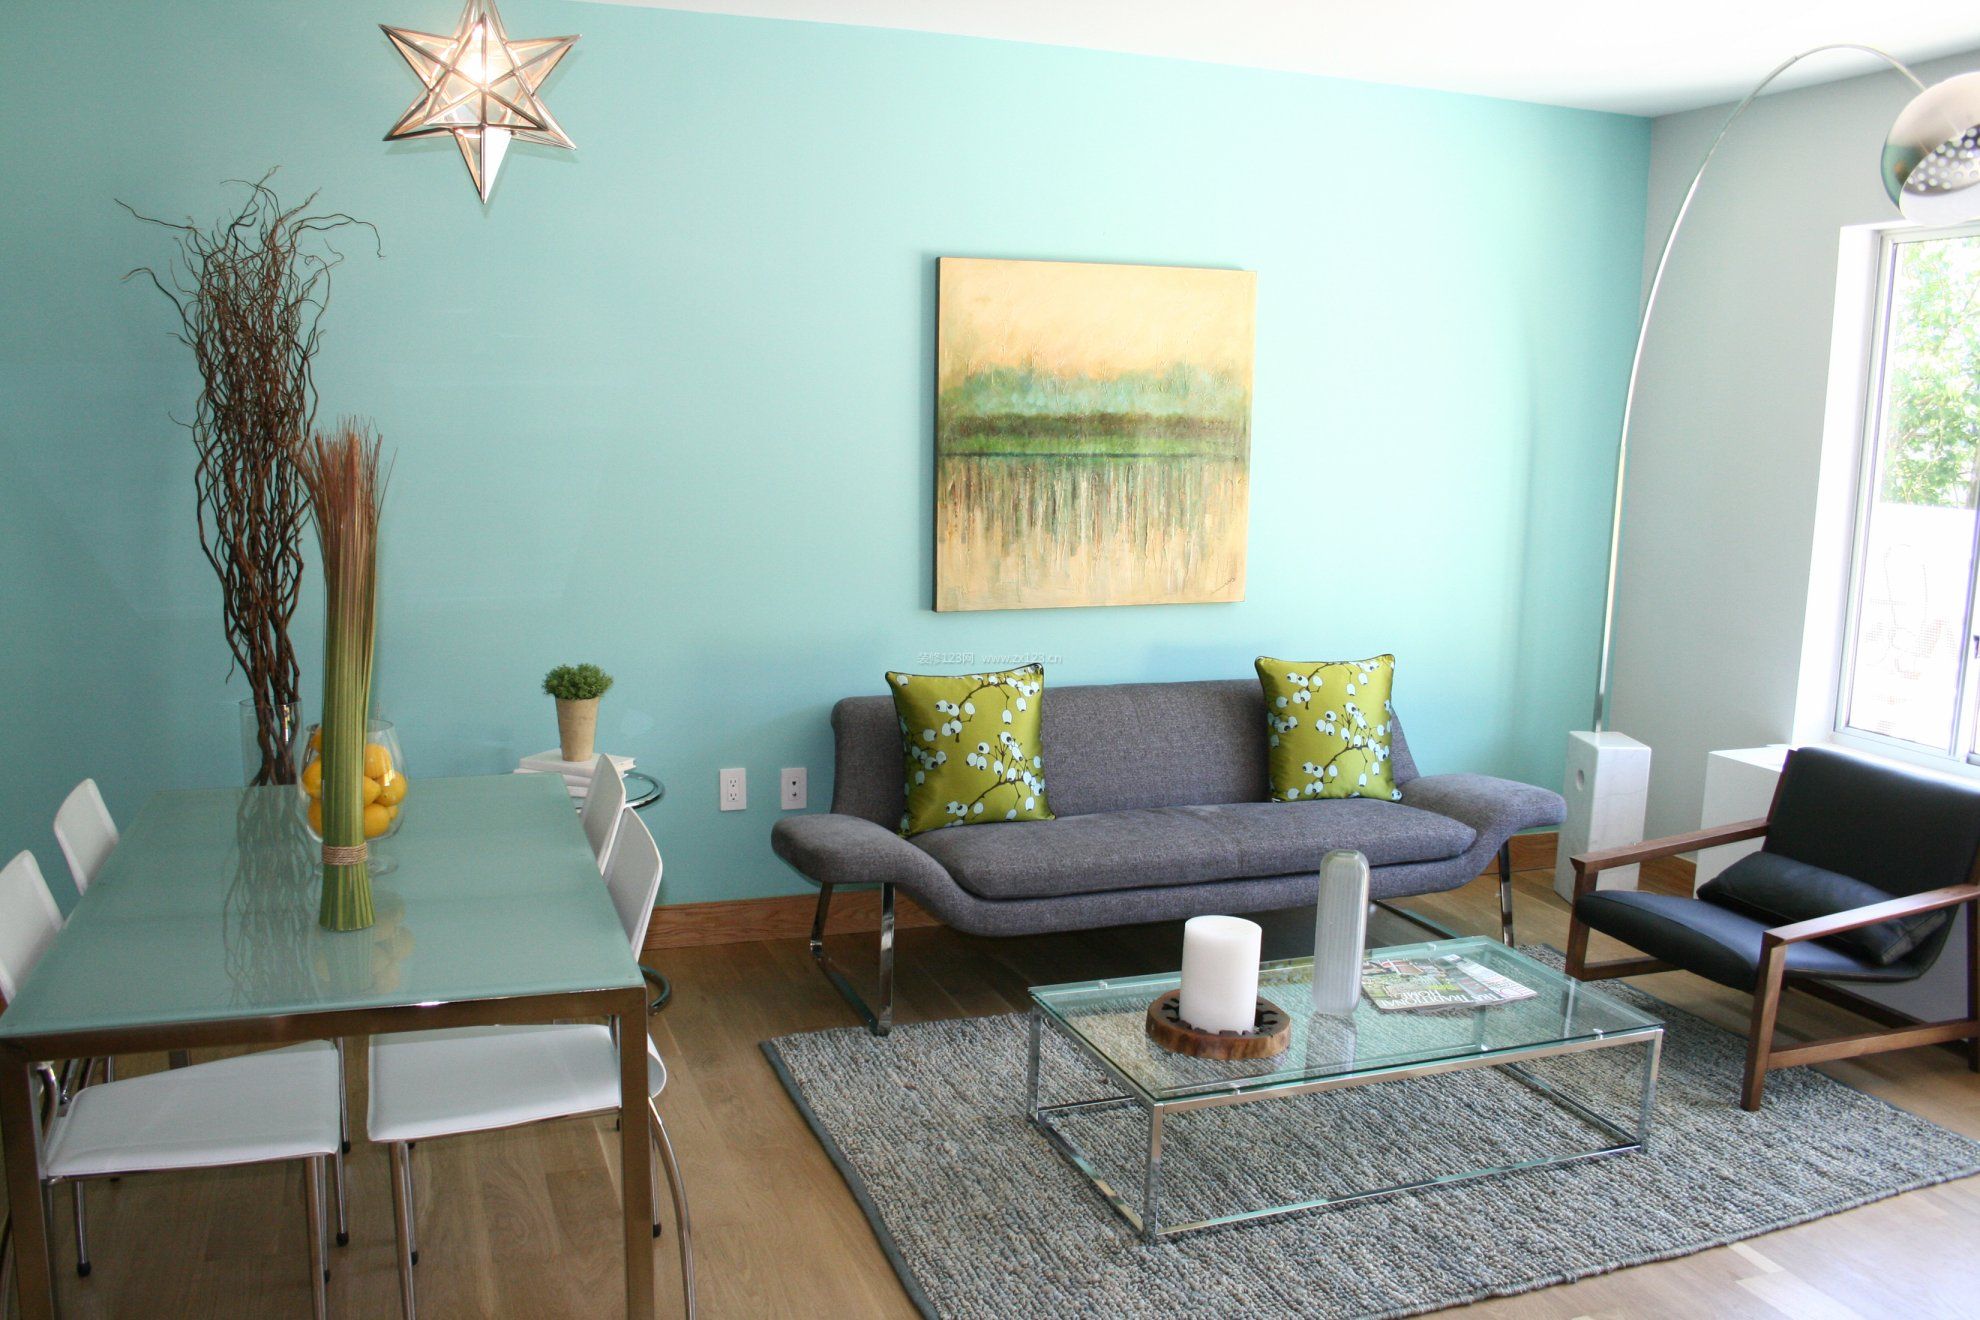 家居简约风格客厅沙发背景墙墙漆颜色装饰